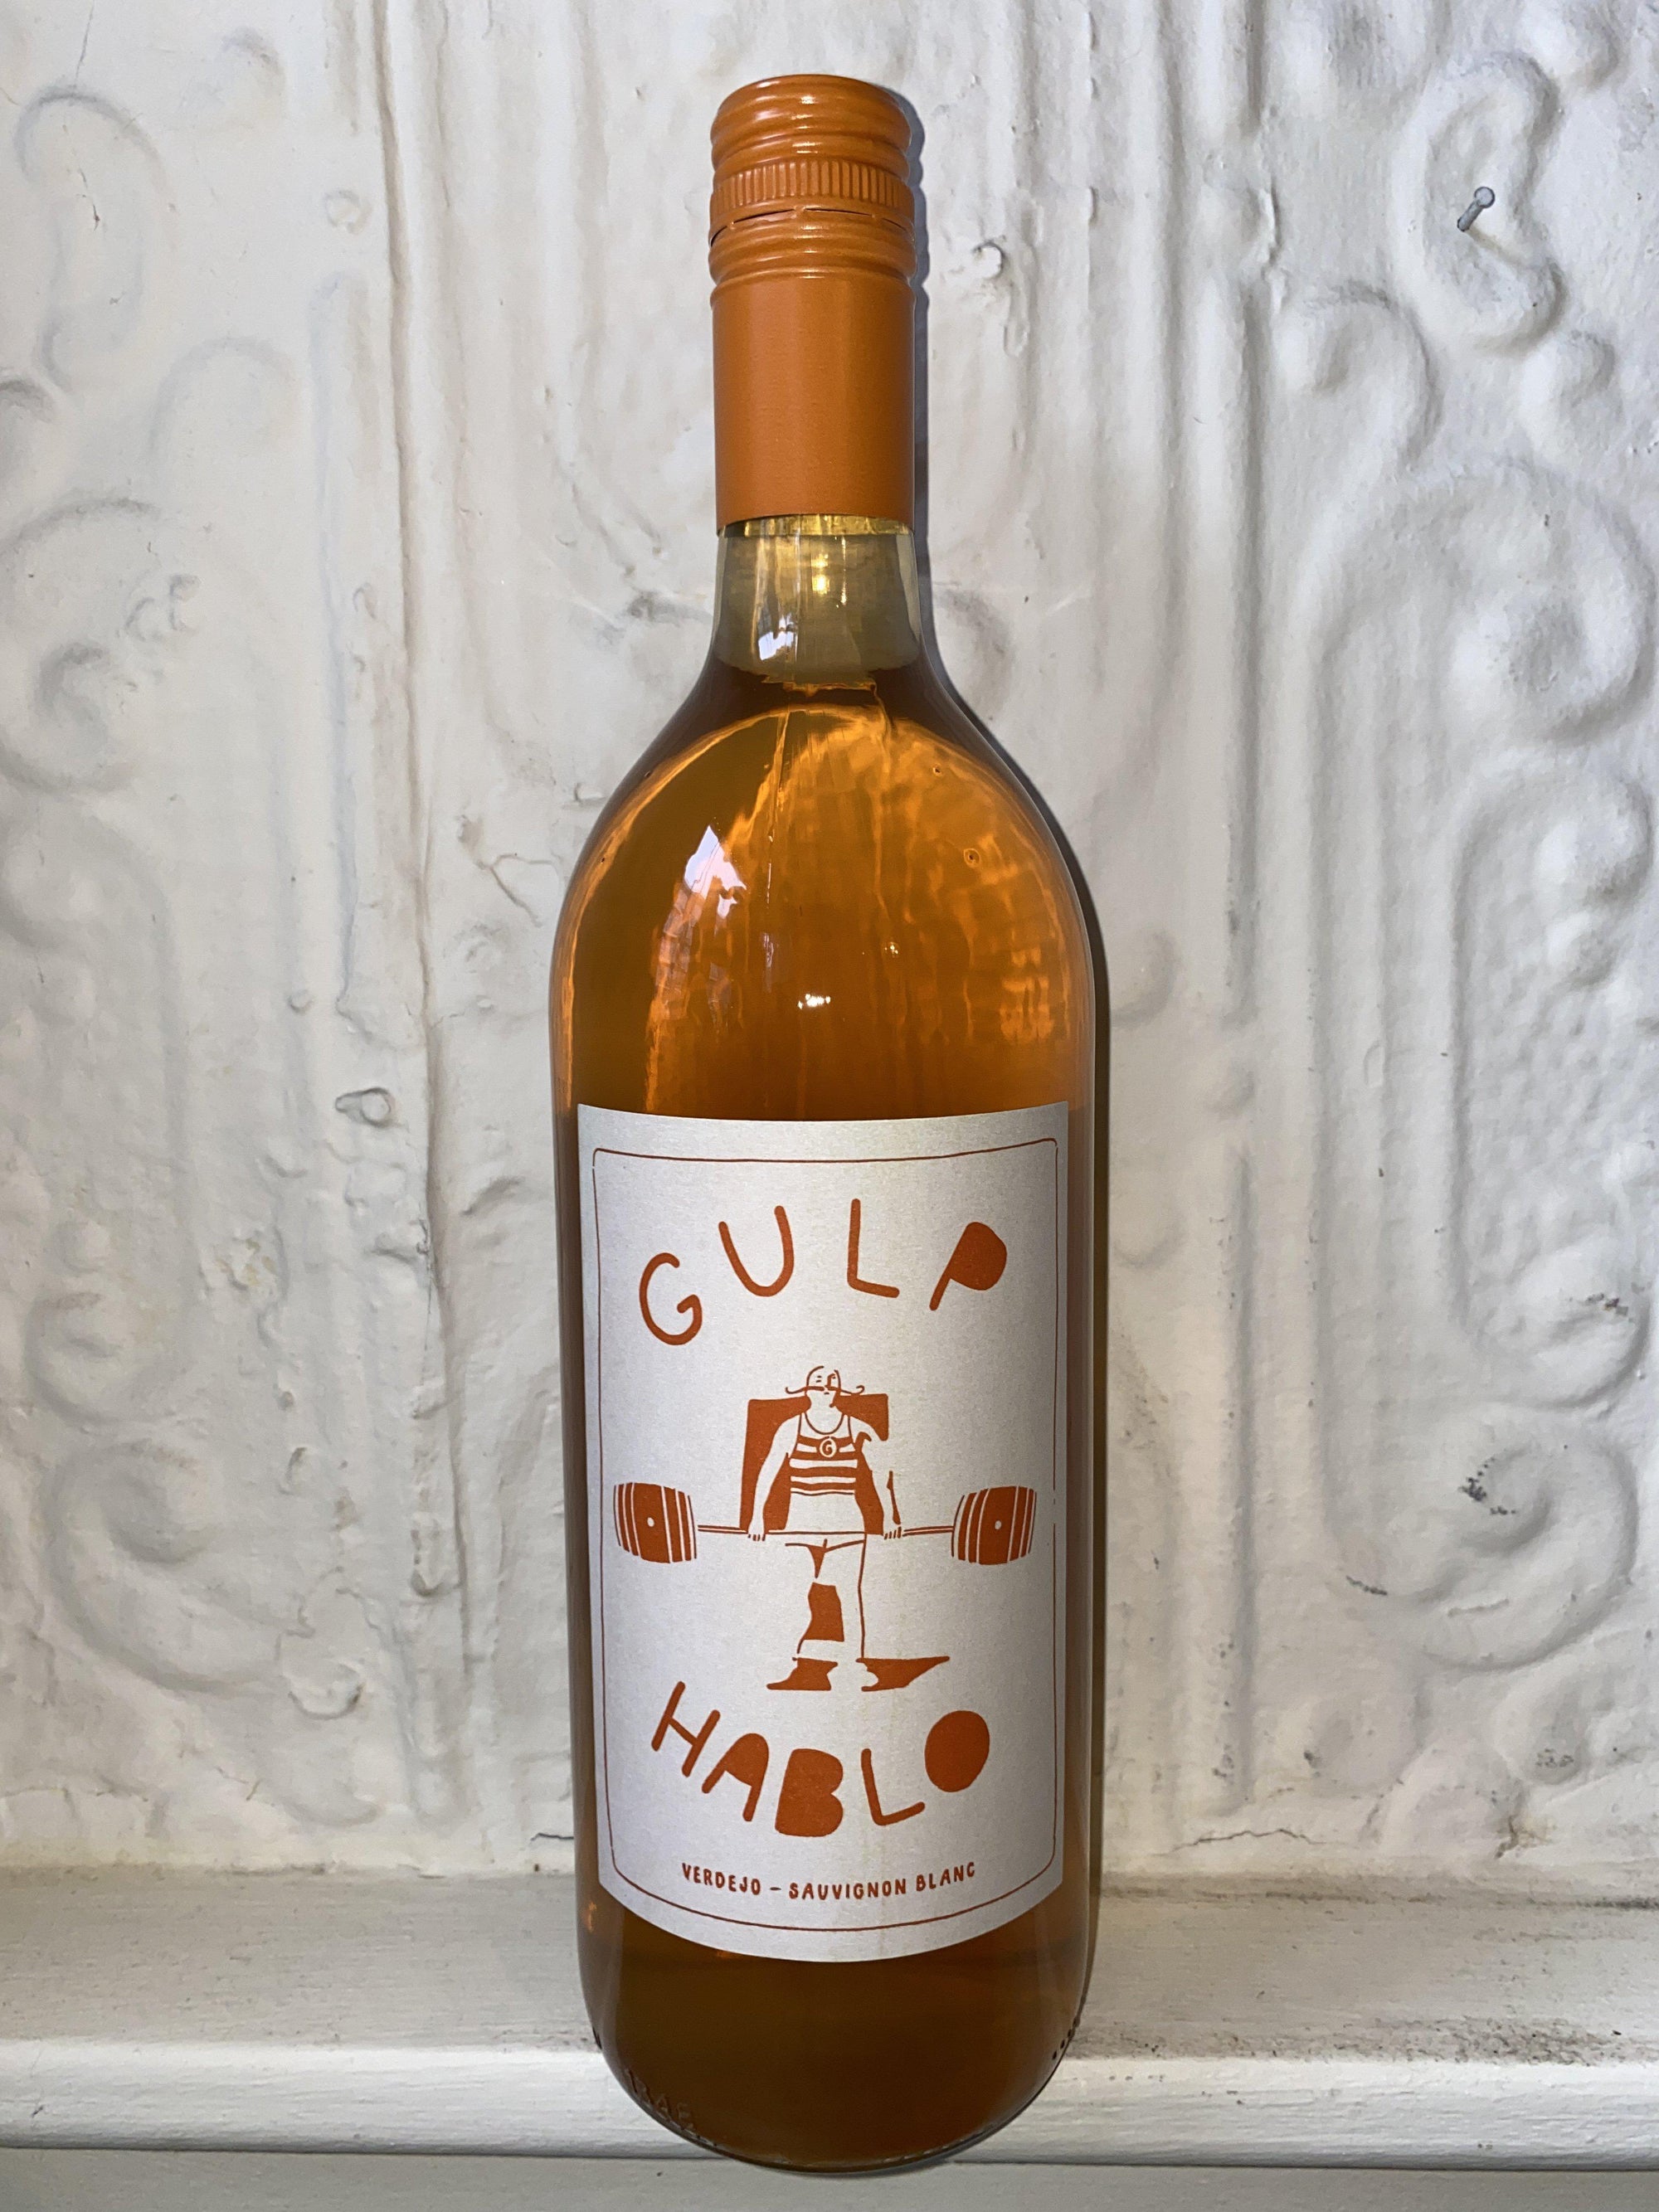 Orange Liter, Gulp Hablo 2020 (Castilla y Leon)-Wine-Bibber & Bell